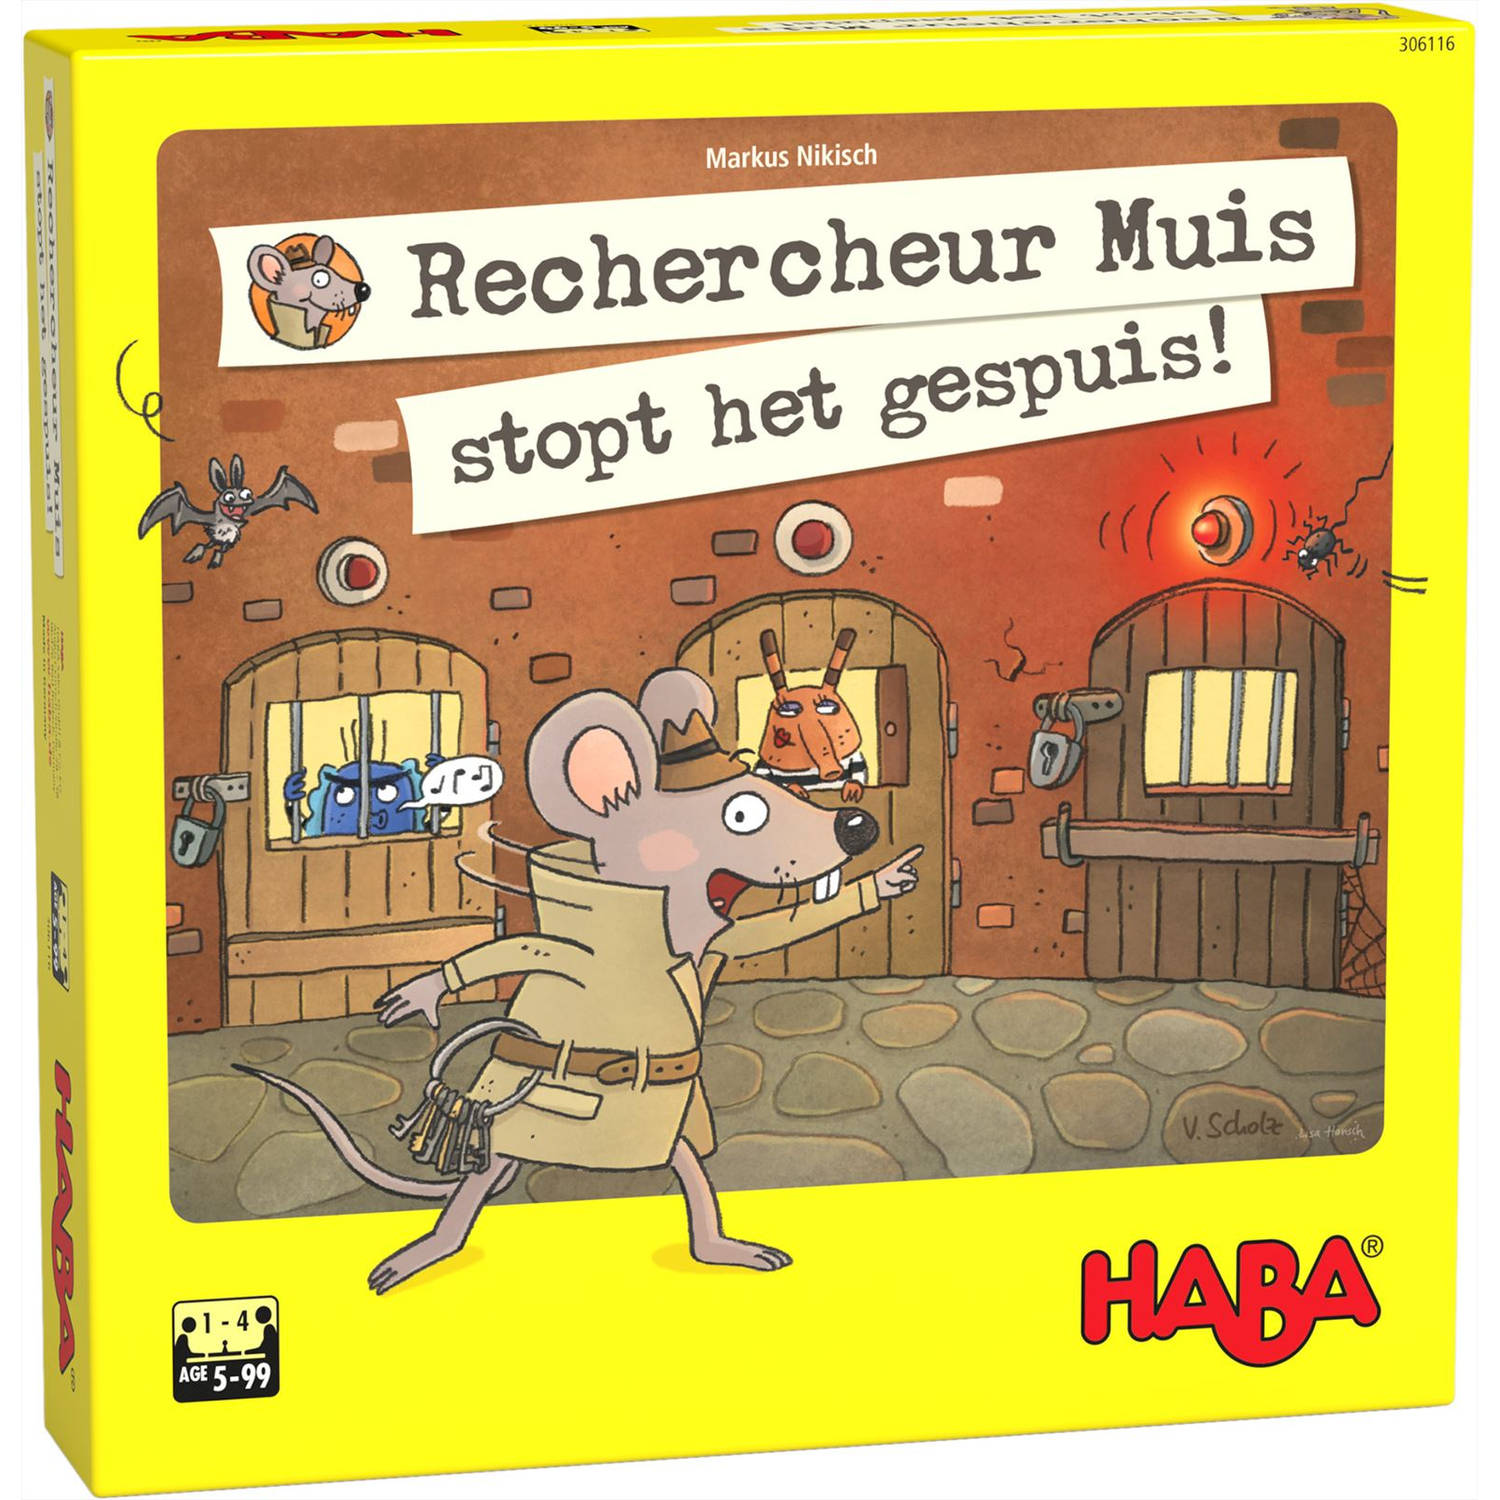 Haba bordspel Rechercheur Muis stopt het gespuis! (NL)